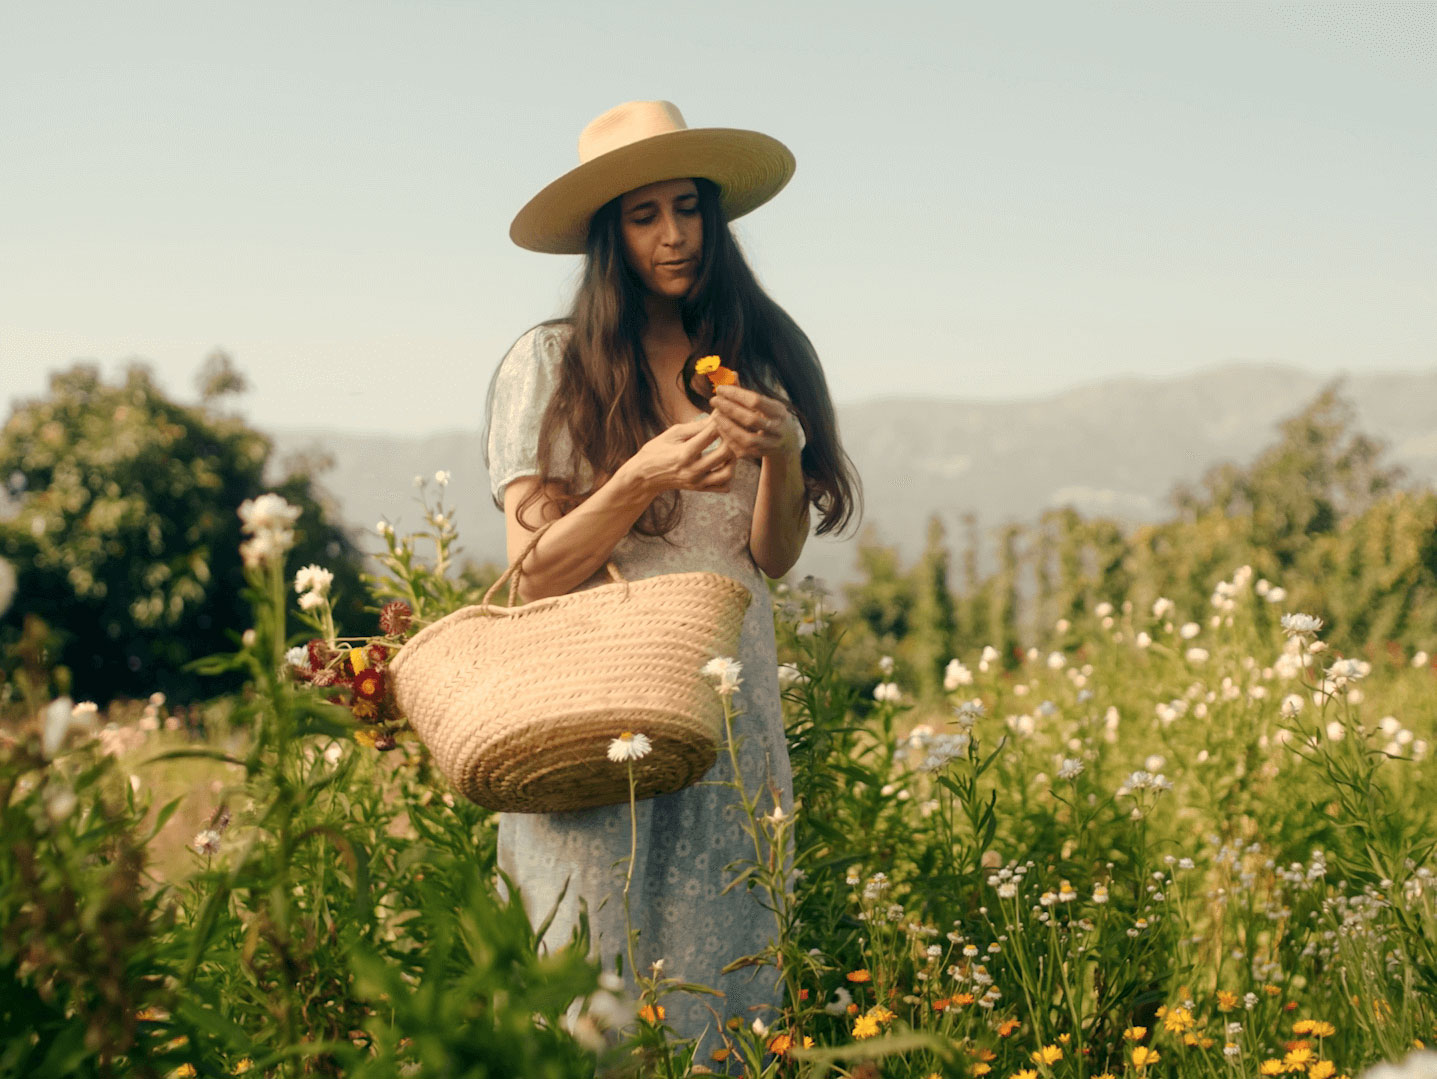 Loria Stern picking flowers in a field.